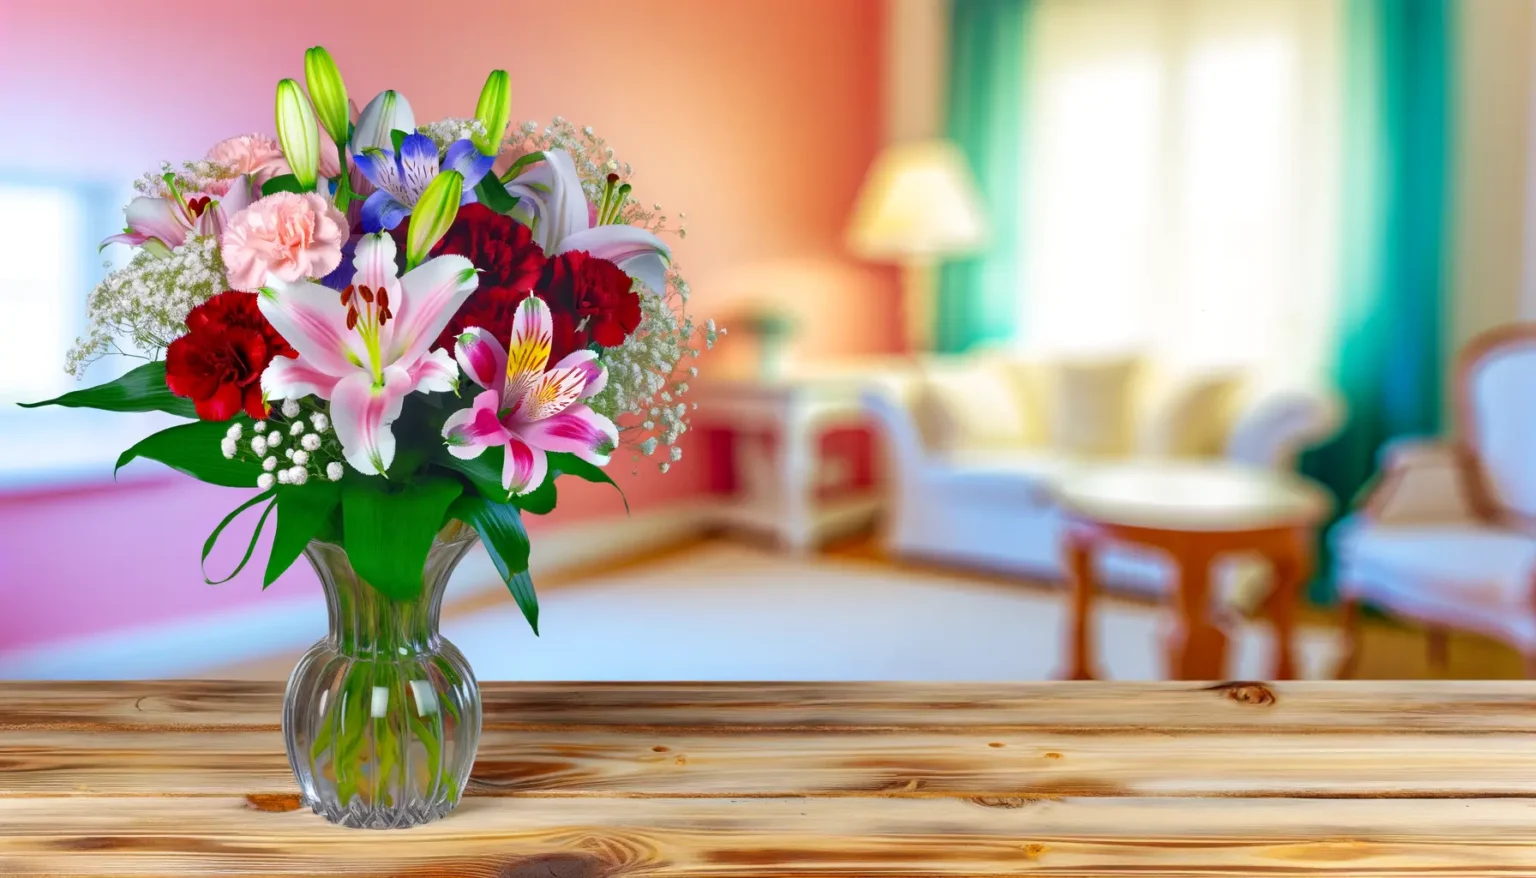 Ein üppiger Strauß verschiedener Blumen in einer Glasvase auf einer Holzoberfläche, im Hintergrund eine unscharf dargestellte, helle Wohnzimmereinrichtung mit Sofas und einer stehenden Lampe.